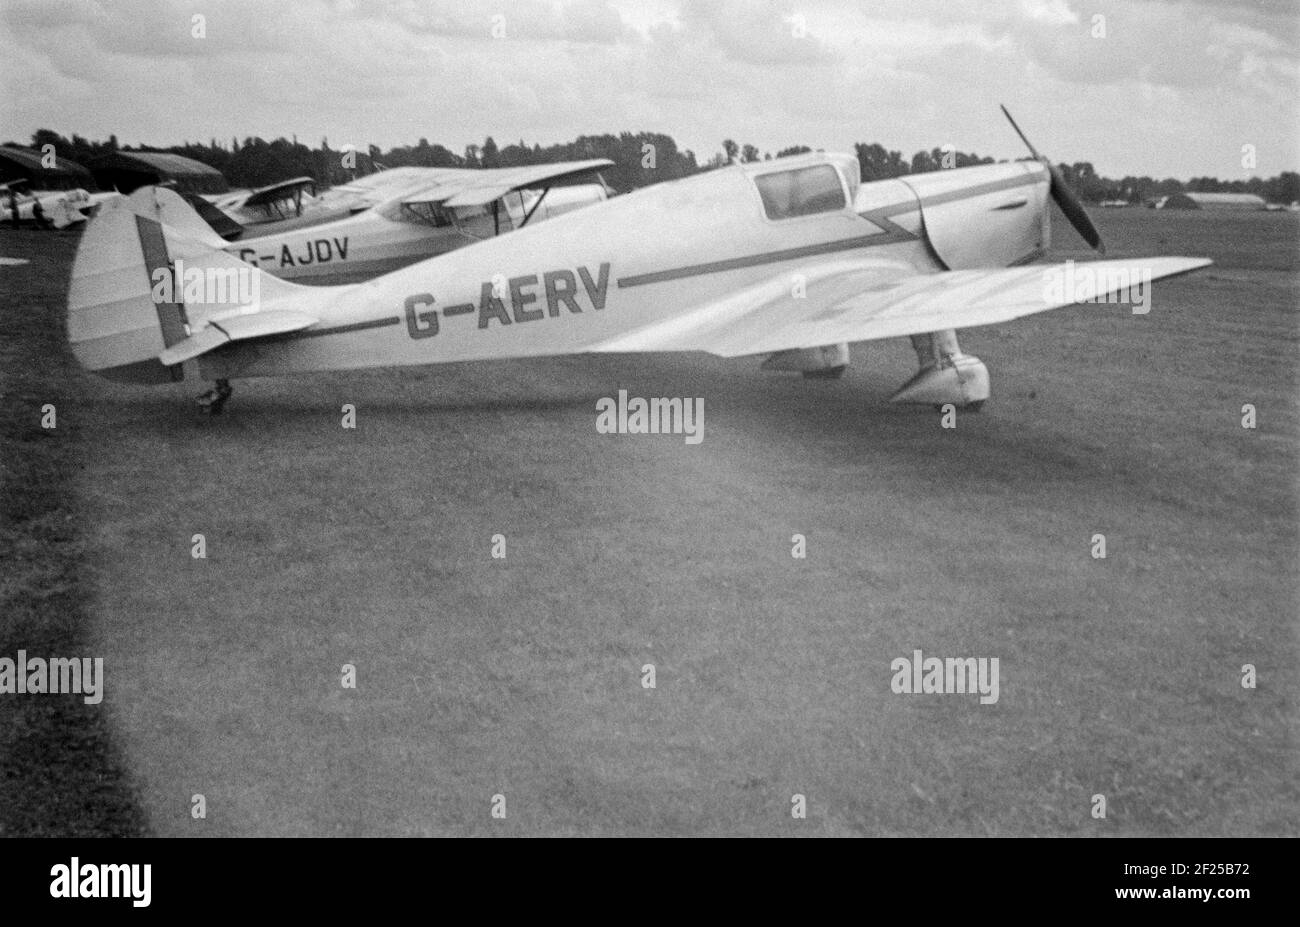 Una fotografia in bianco e nero d'annata del 1958 di un aereo M 11A Whitney a luce dritta, registrazione G-AERV, scattata in un campo d'aviazione in Inghilterra. Foto Stock